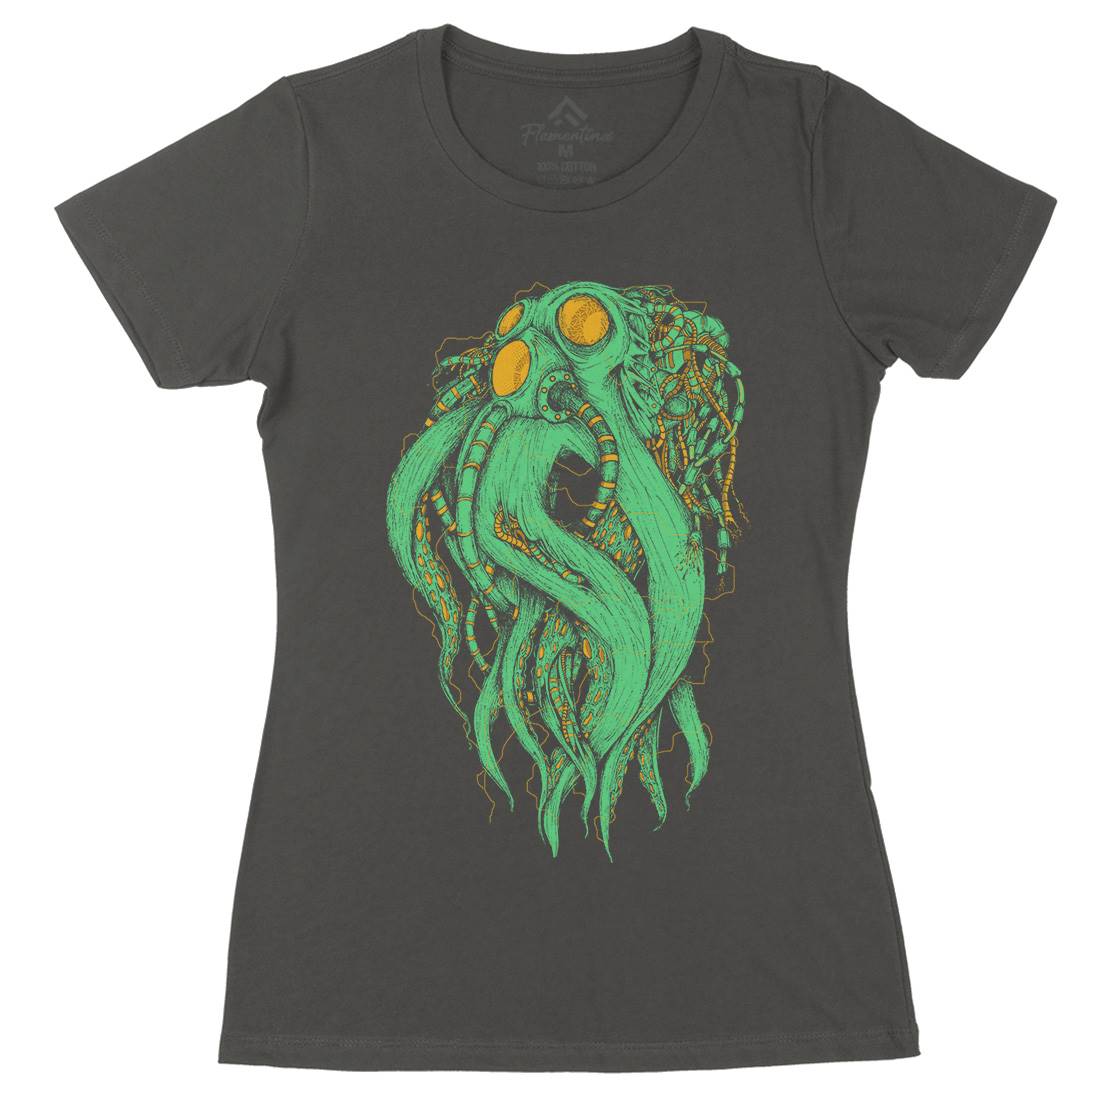 Octopus Robot Womens Organic Crew Neck T-Shirt Navy D062